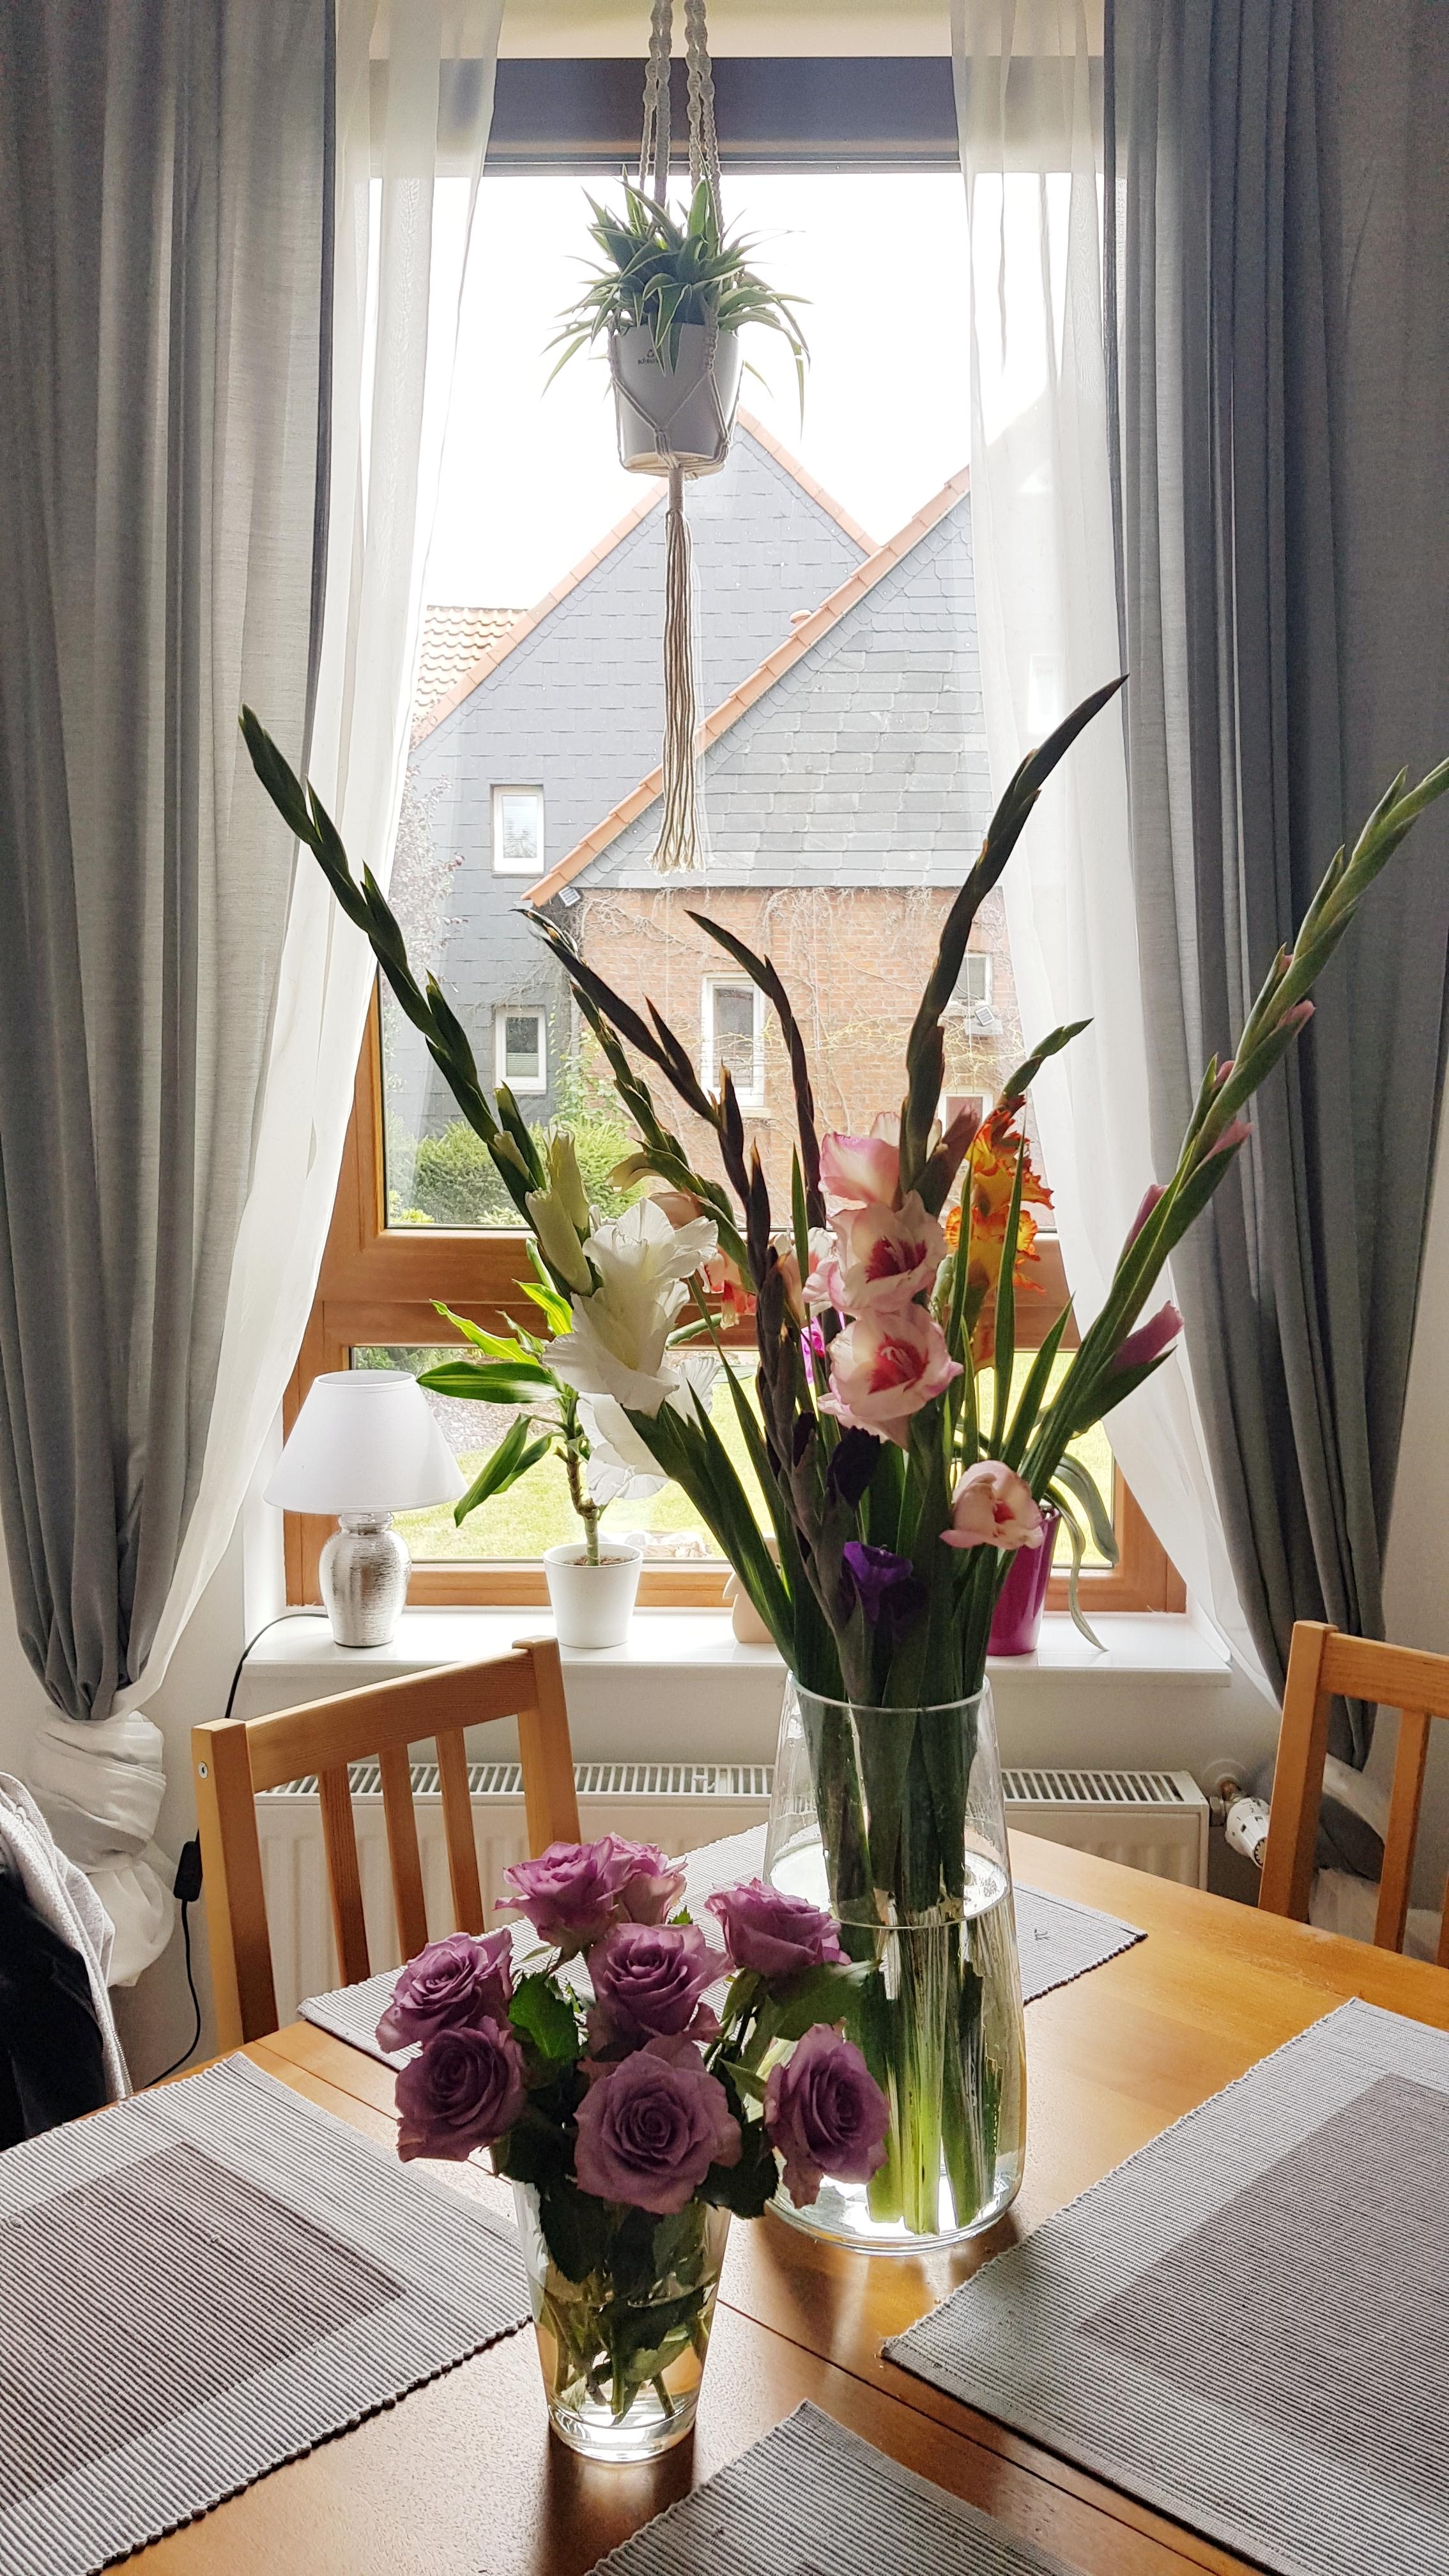 Blumen machen jeden Raum Bunter ♡ #blumenliebe #flowers #flowerlove #cozyliving #cozyhome #decoration 